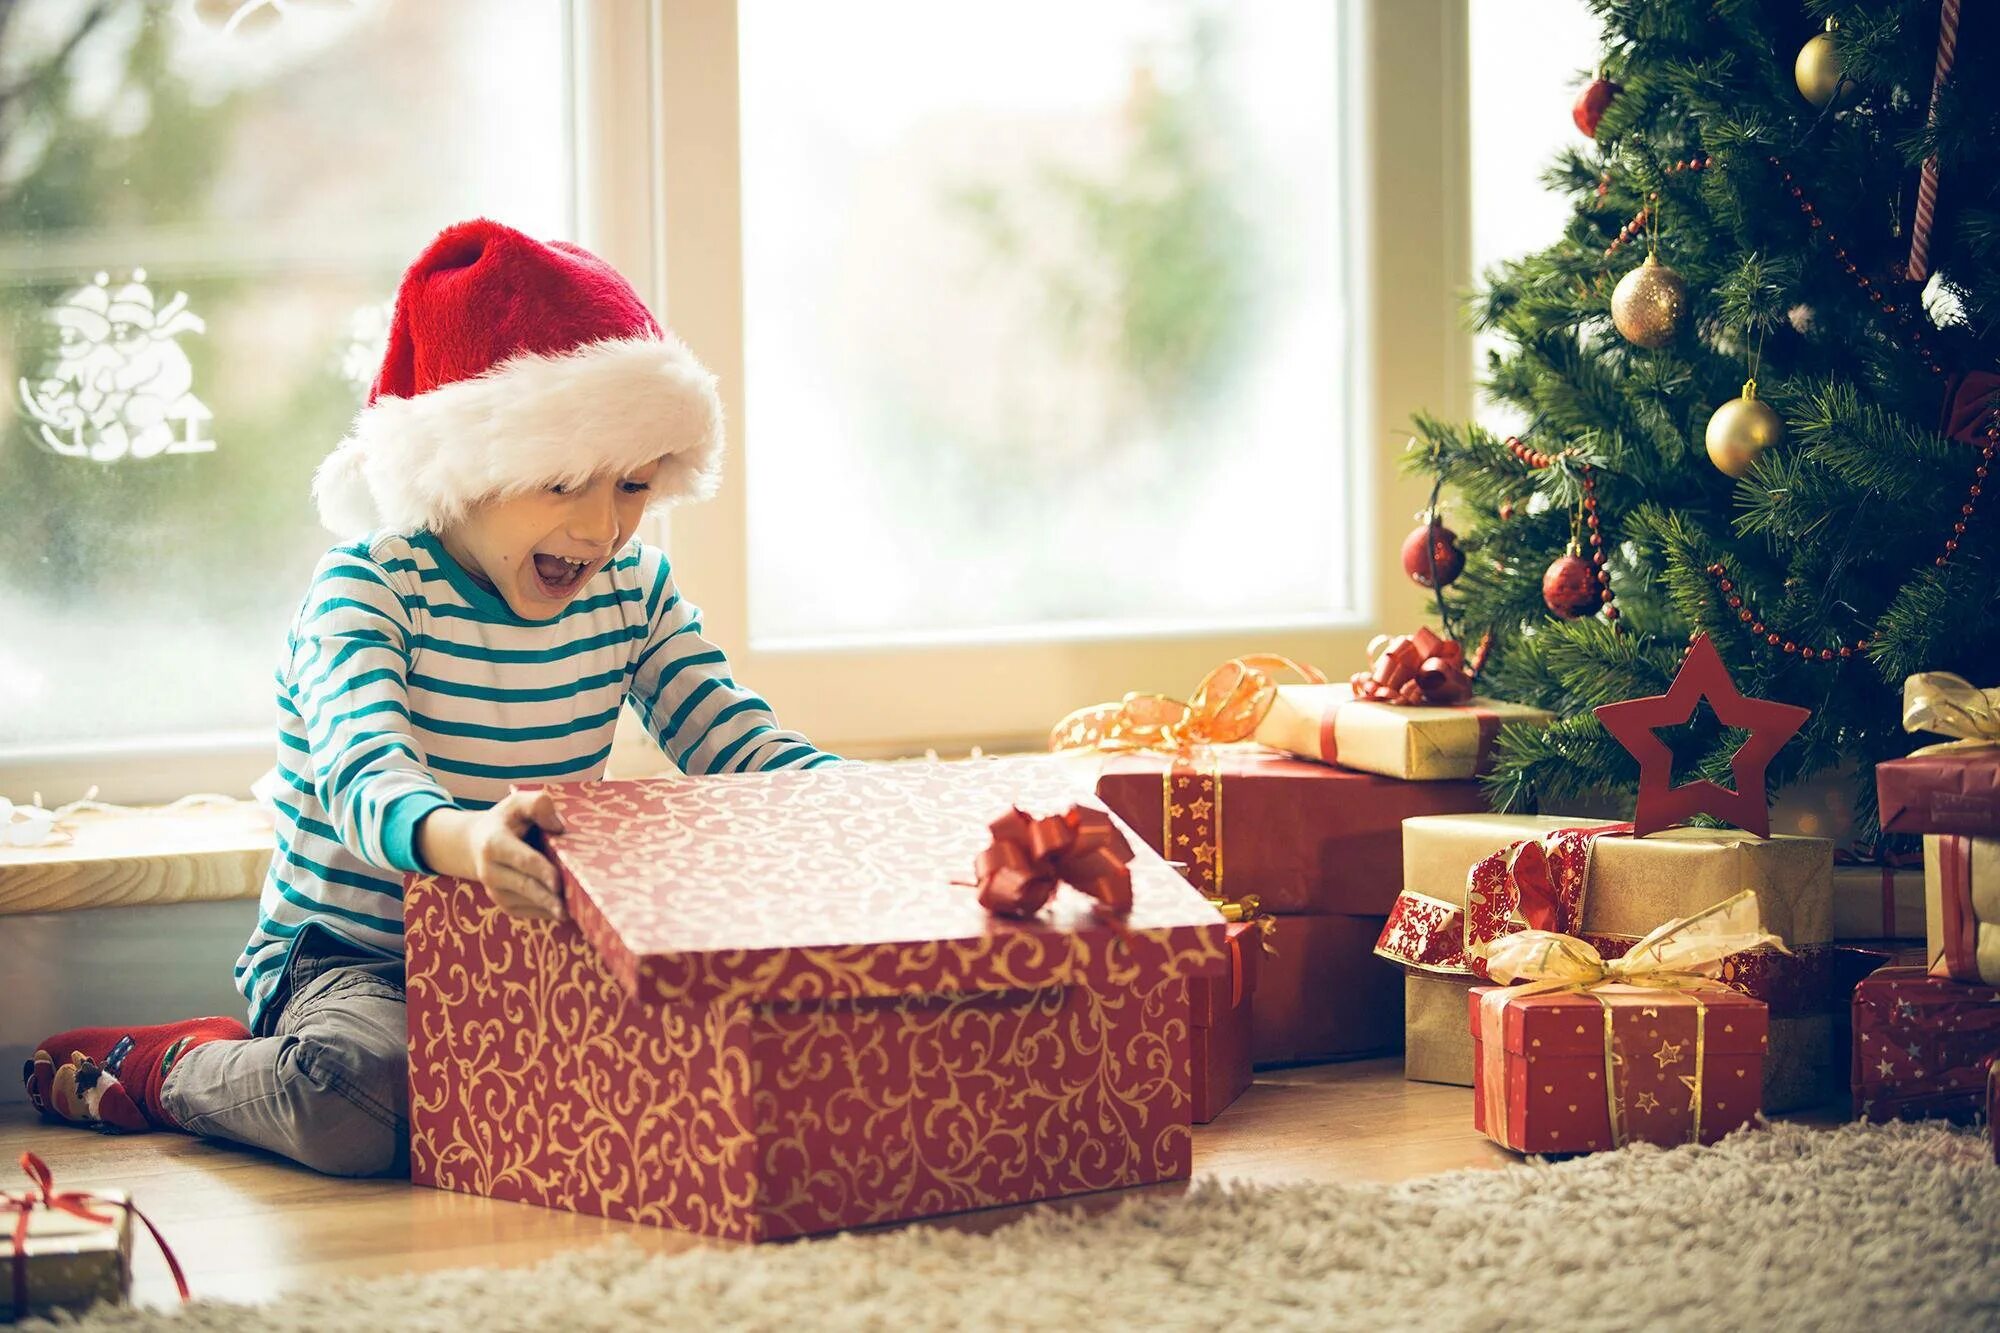 Дай подарок на новый год. Подарки под ёлкой. Подари под елкой для детей. Дети под елкой с подарками. Подарок на новый год.